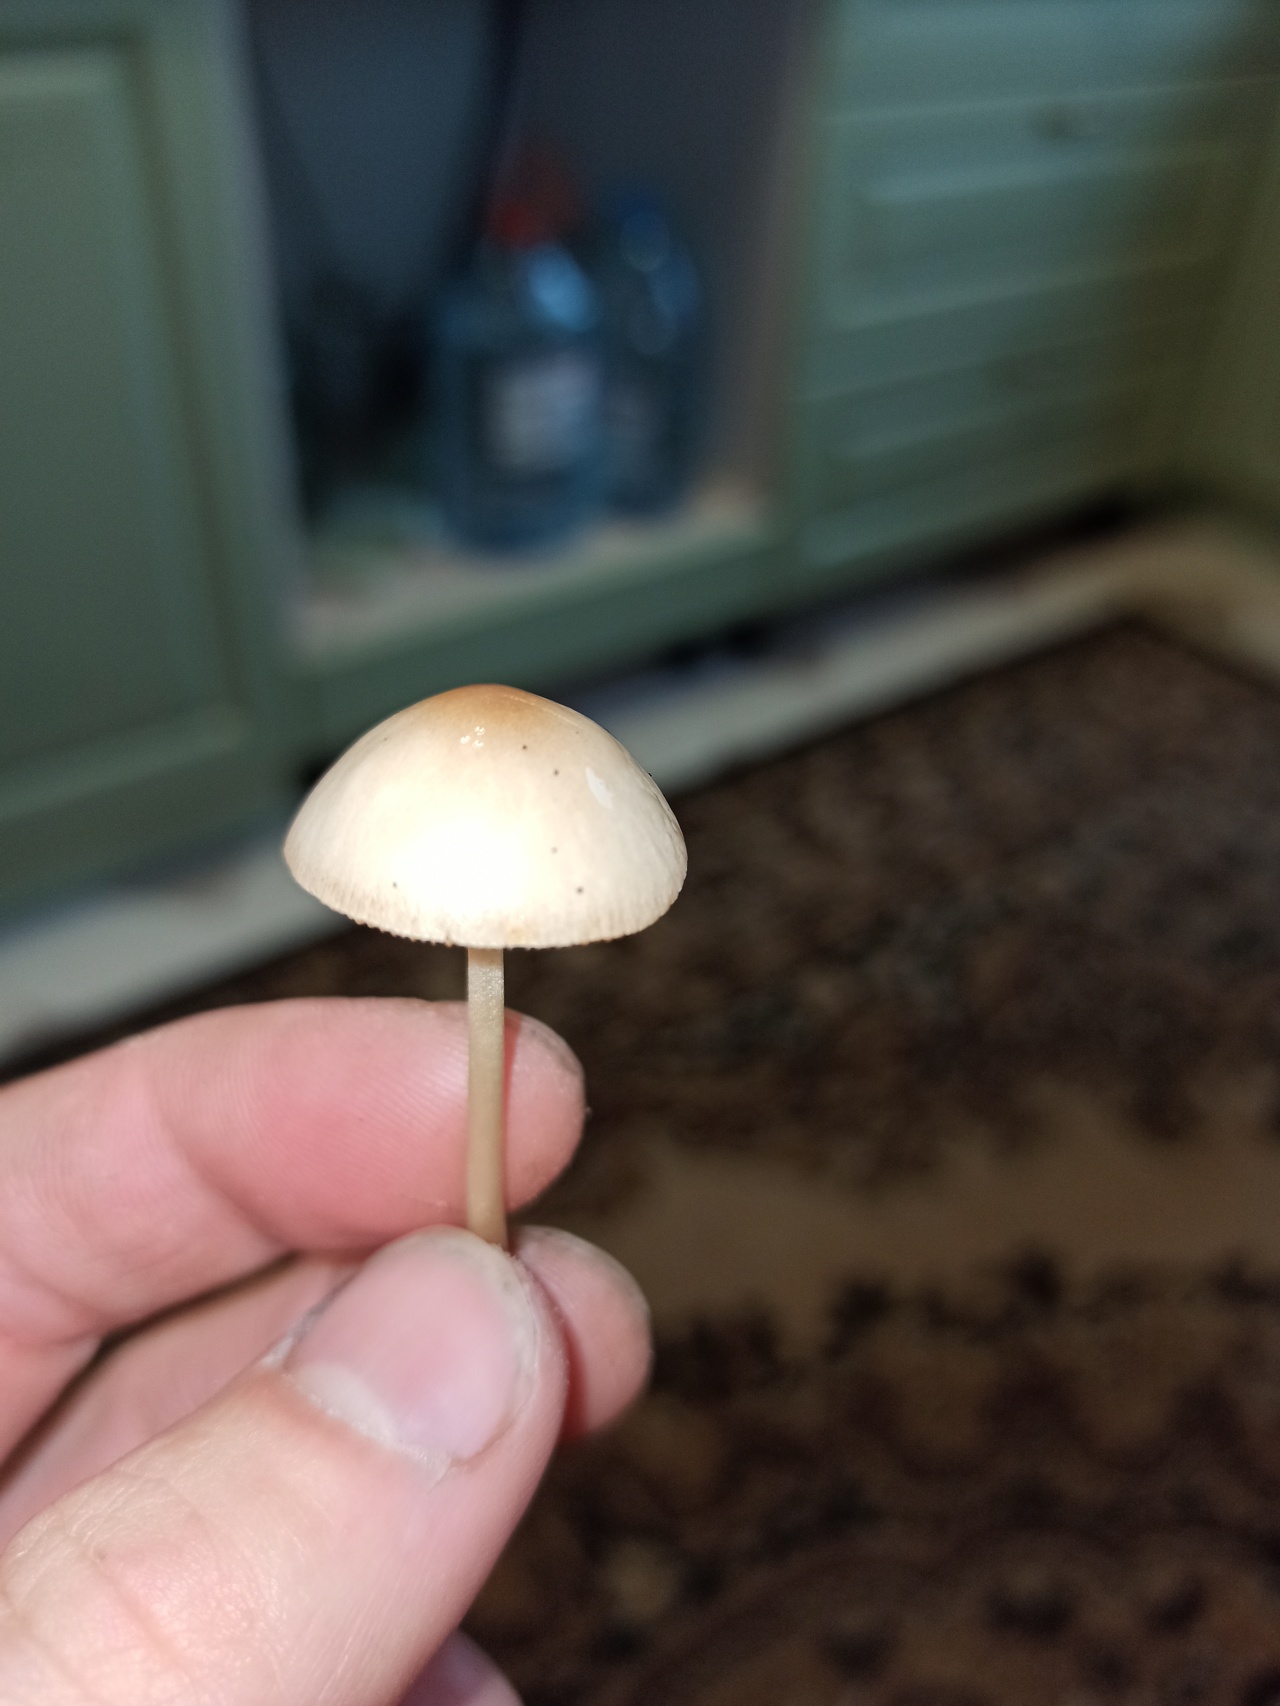 Как распознать грибы по фото